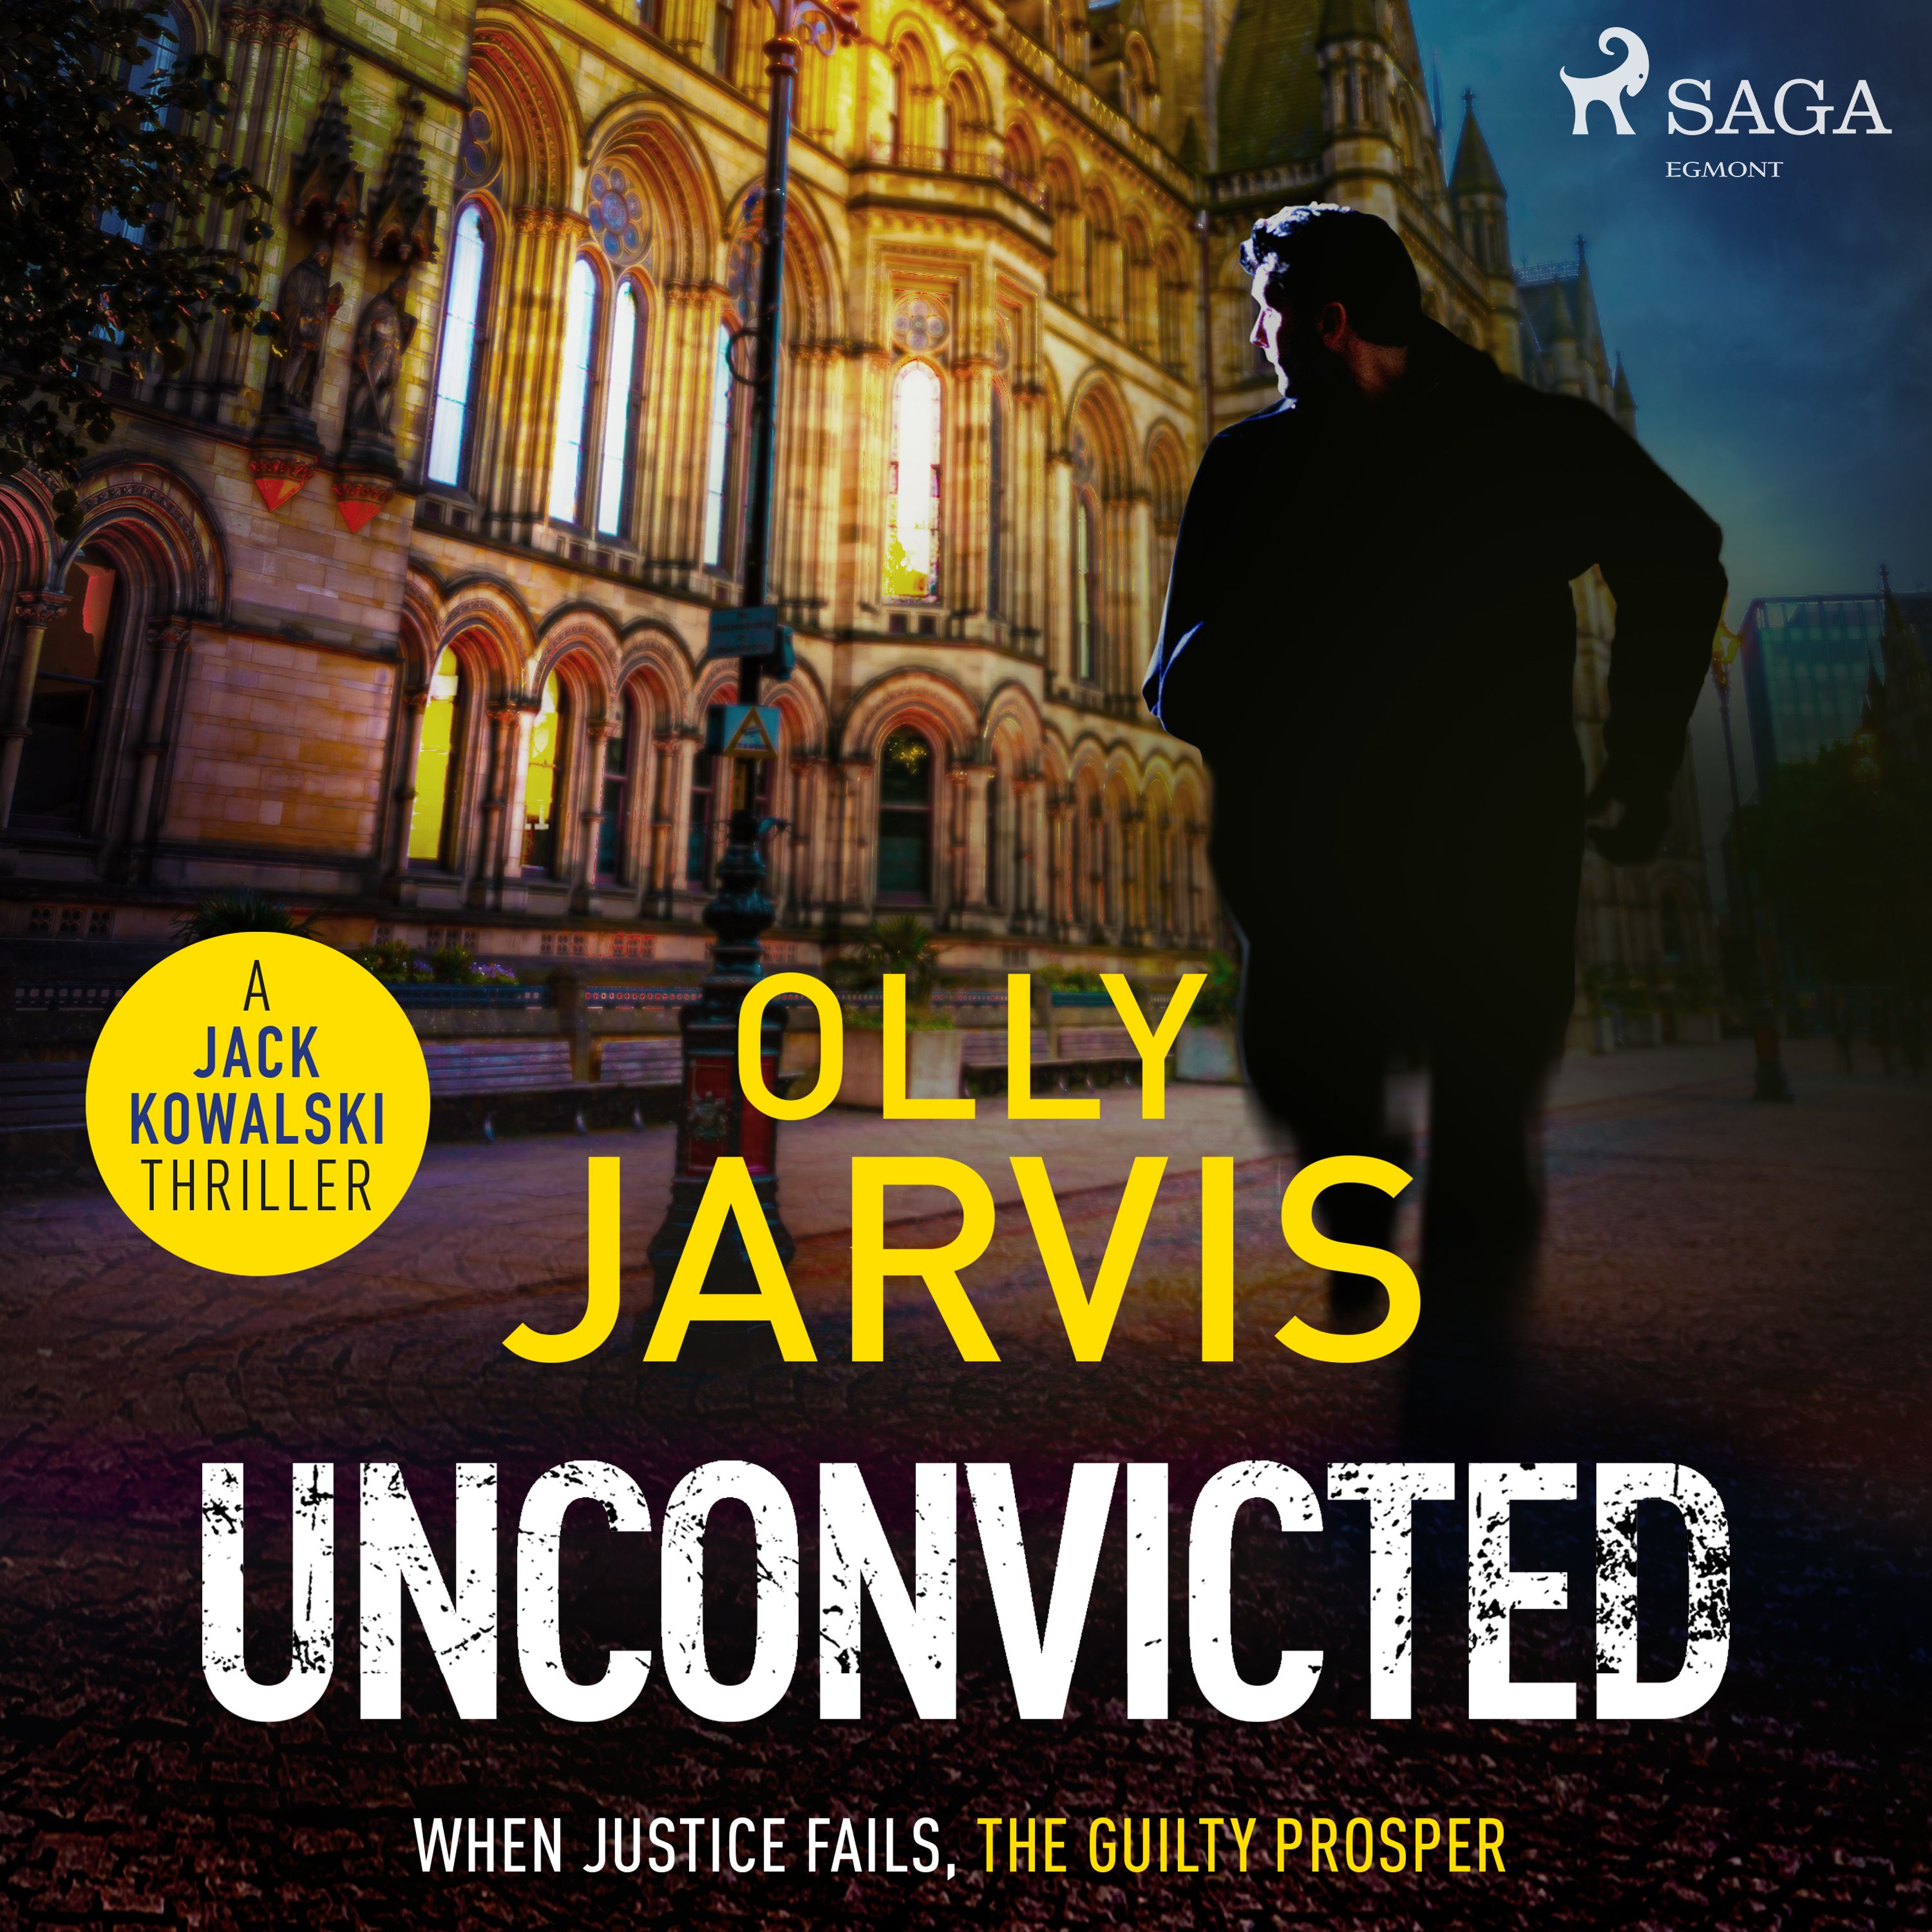 Unconvicted, ljudbok av Olly Jarvis